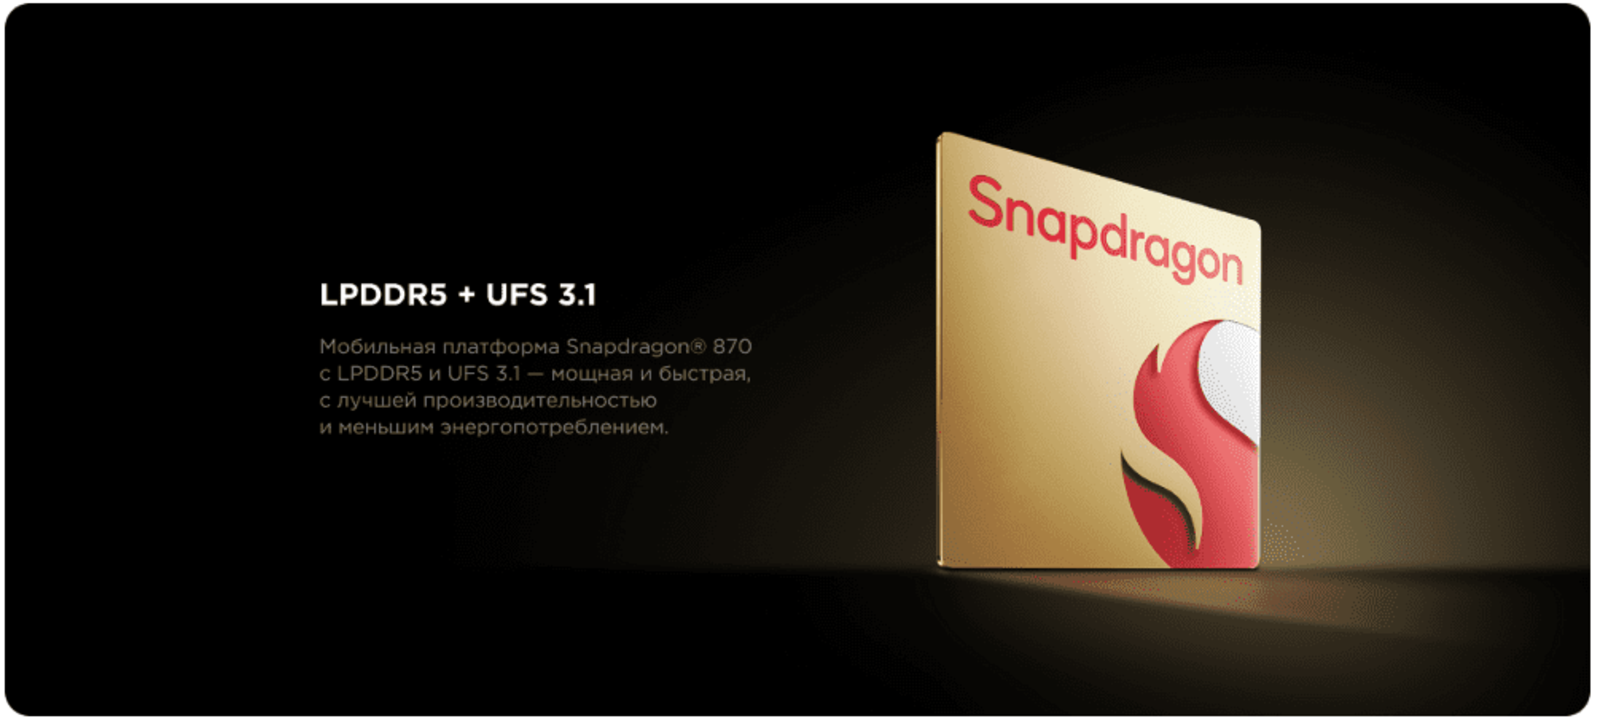 Мобильная платформа Snapdragon® 870 с LPDDR5 и UFS 3,1 - мощная и быстрая.